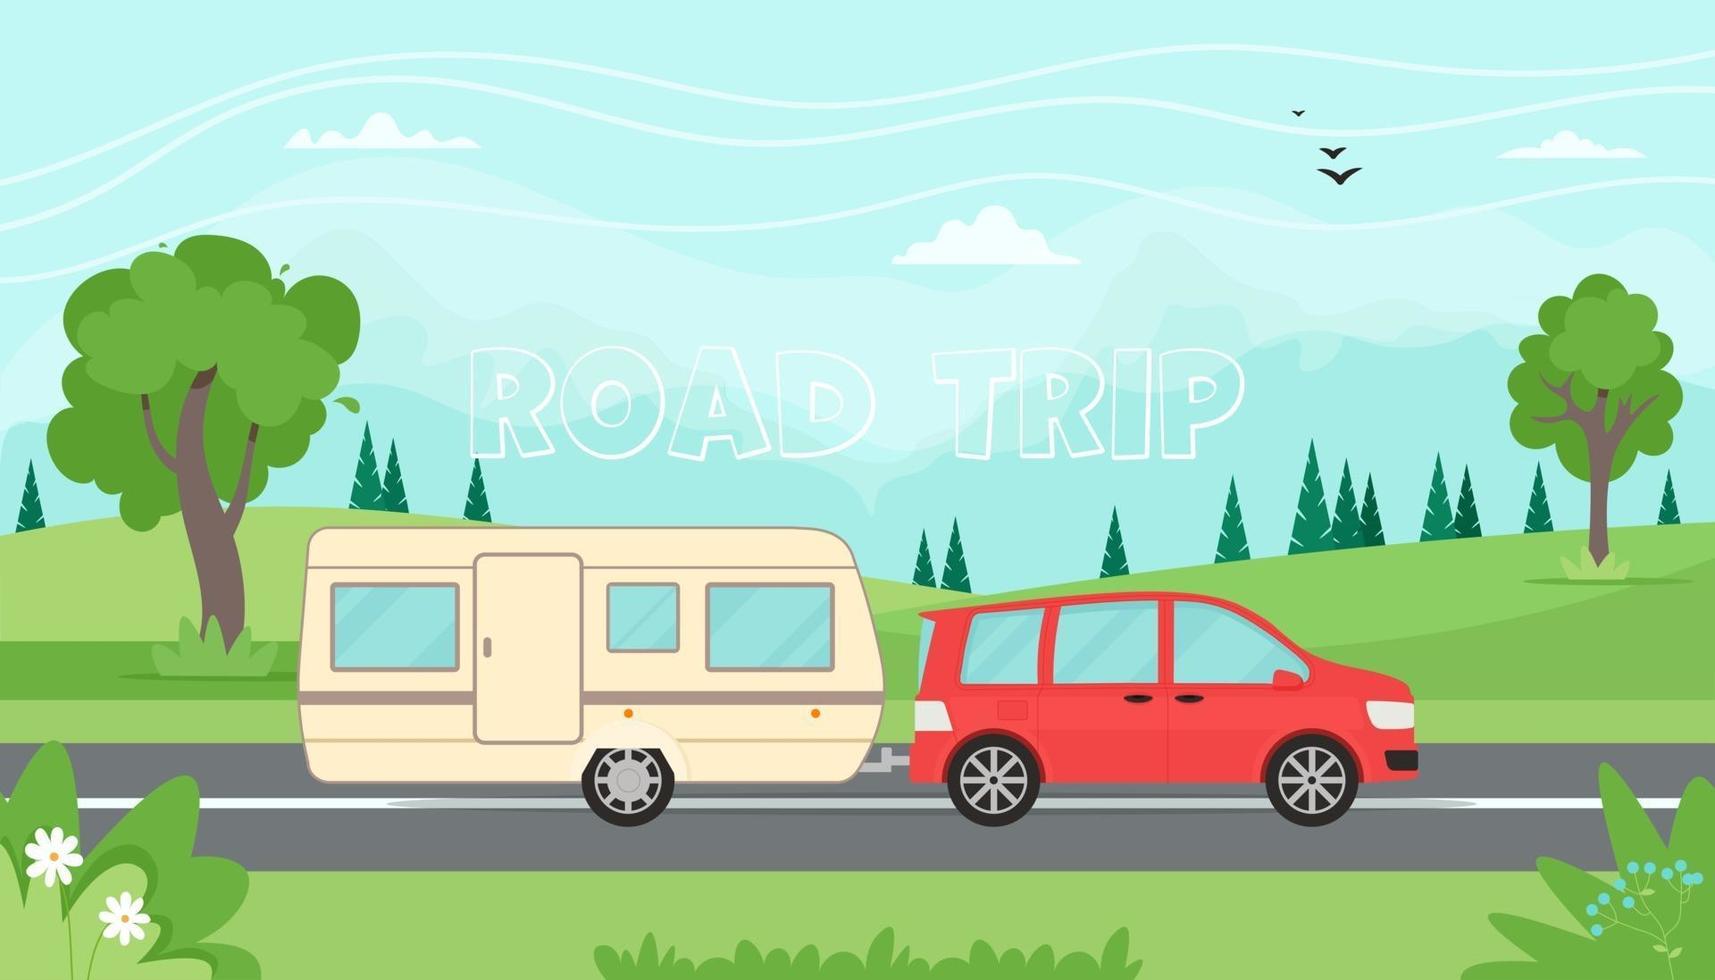 hora de viajar, o conceito de viagem. viajando de carro com trailer de viagem nas montanhas. paisagem de primavera ou verão. ilustração vetorial em estilo simples vetor